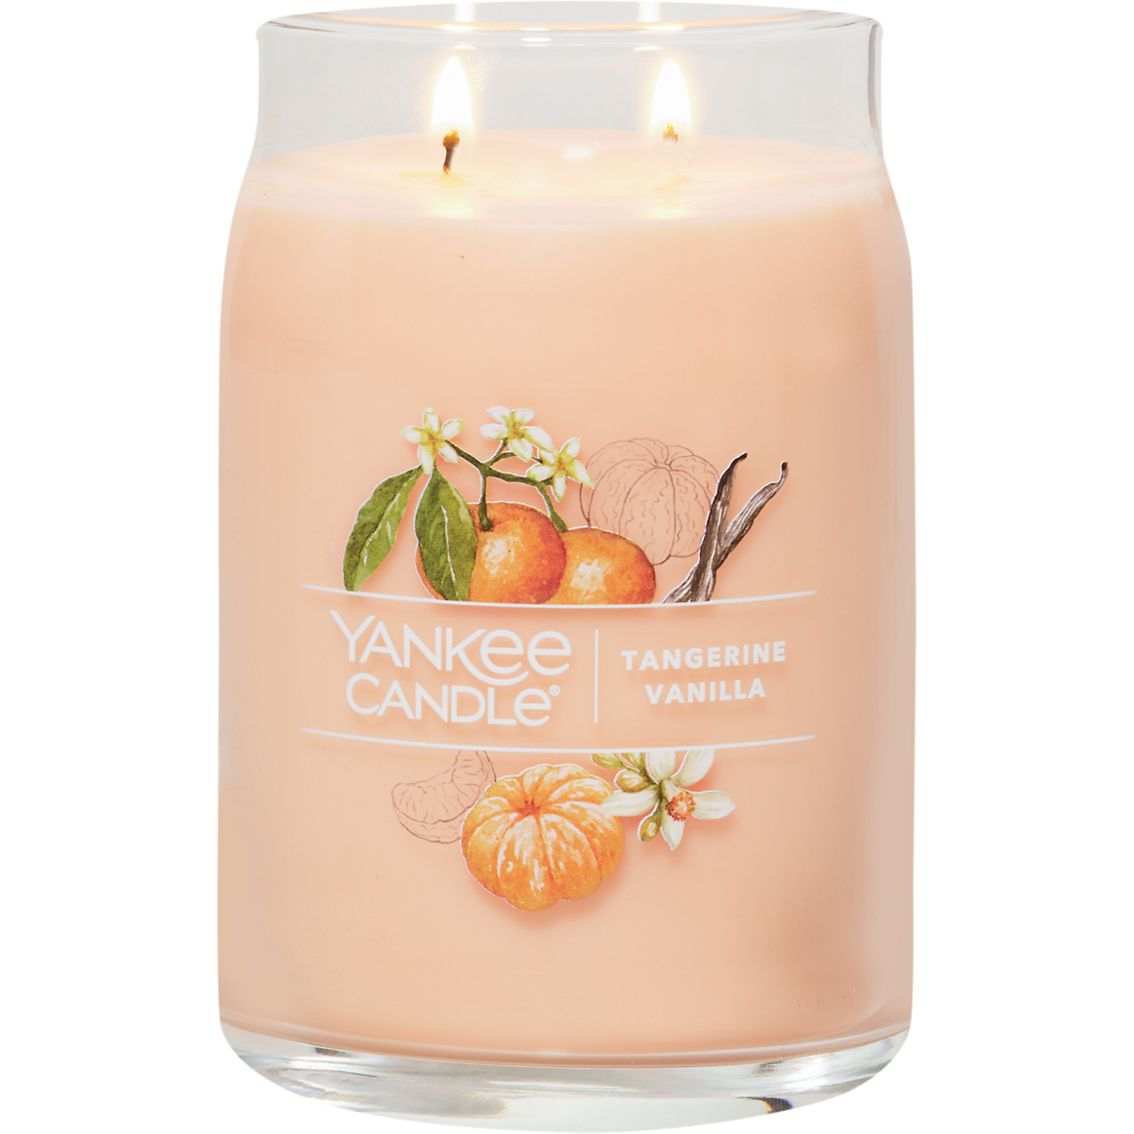 Yankee Candle Tangerine Vanilla Signature Large Jar Candle - Image 2 of 2